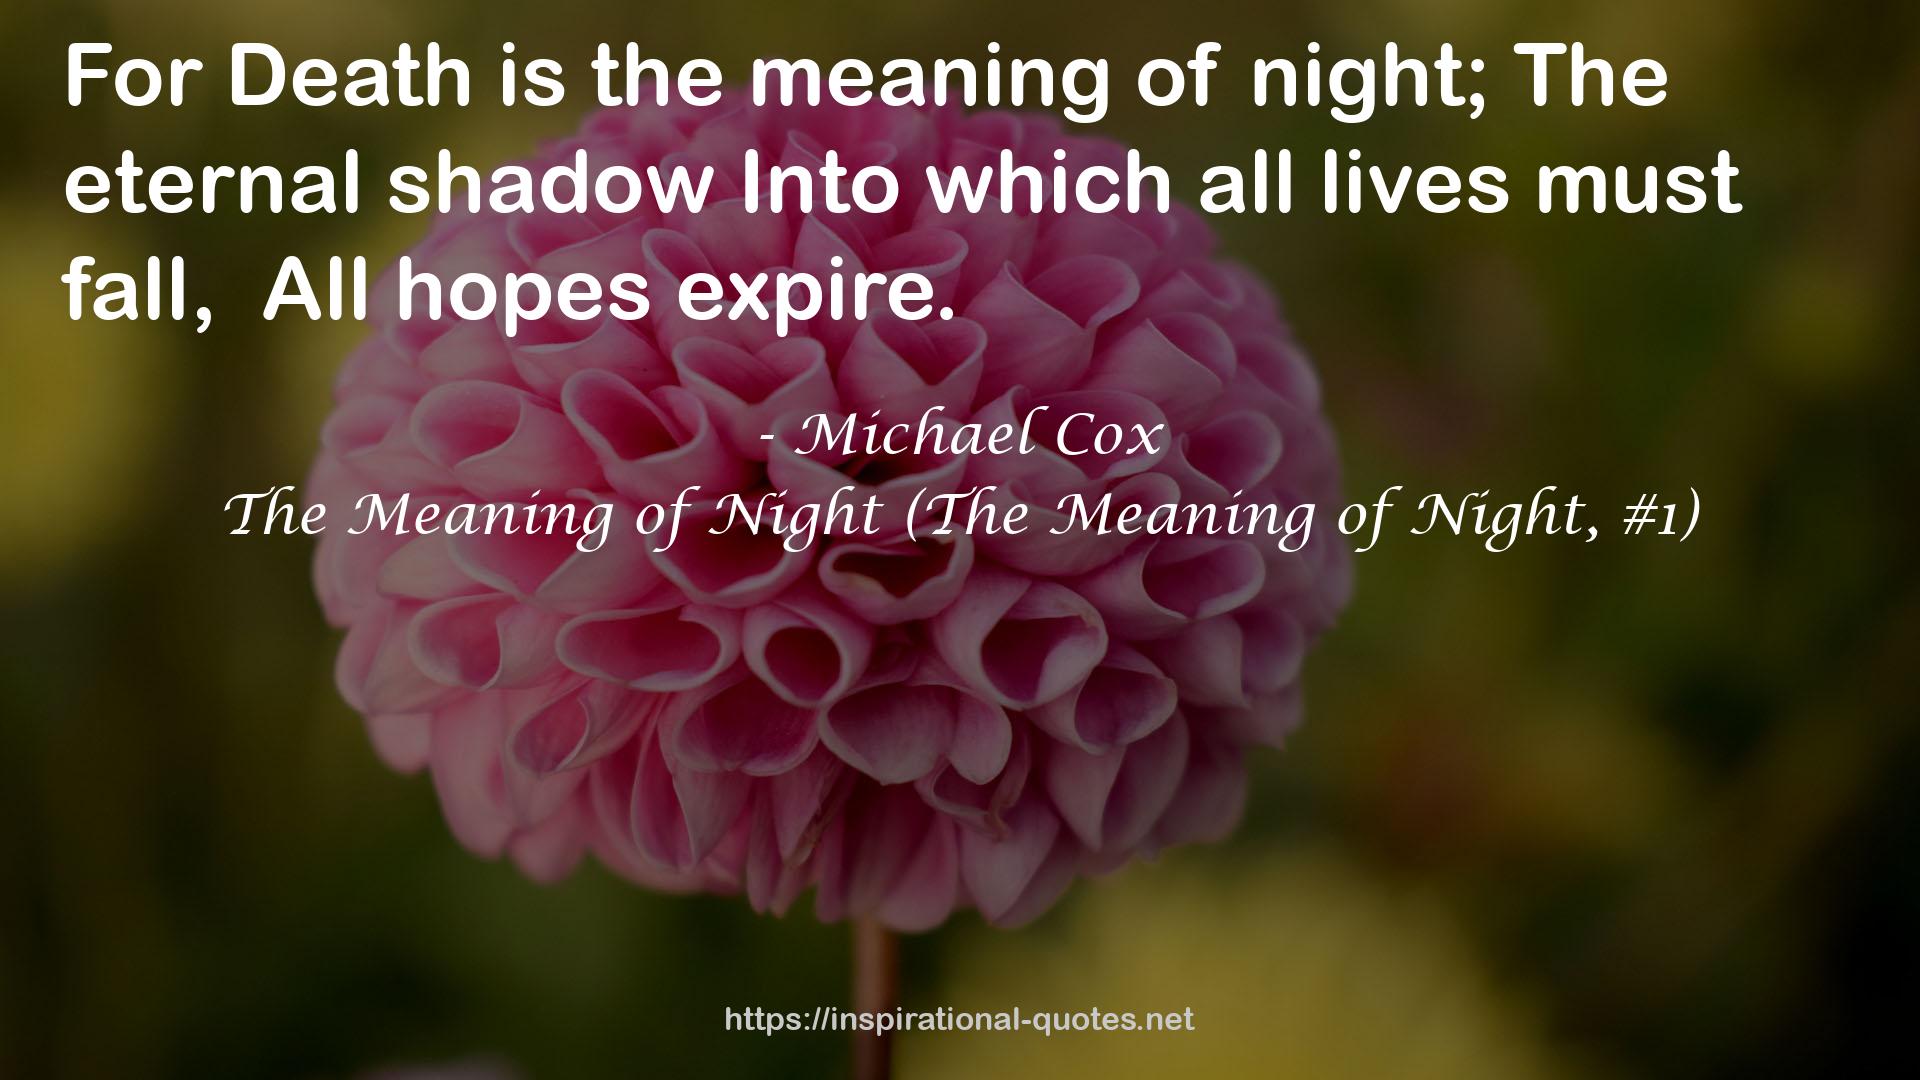 The Meaning of Night (The Meaning of Night, #1) QUOTES